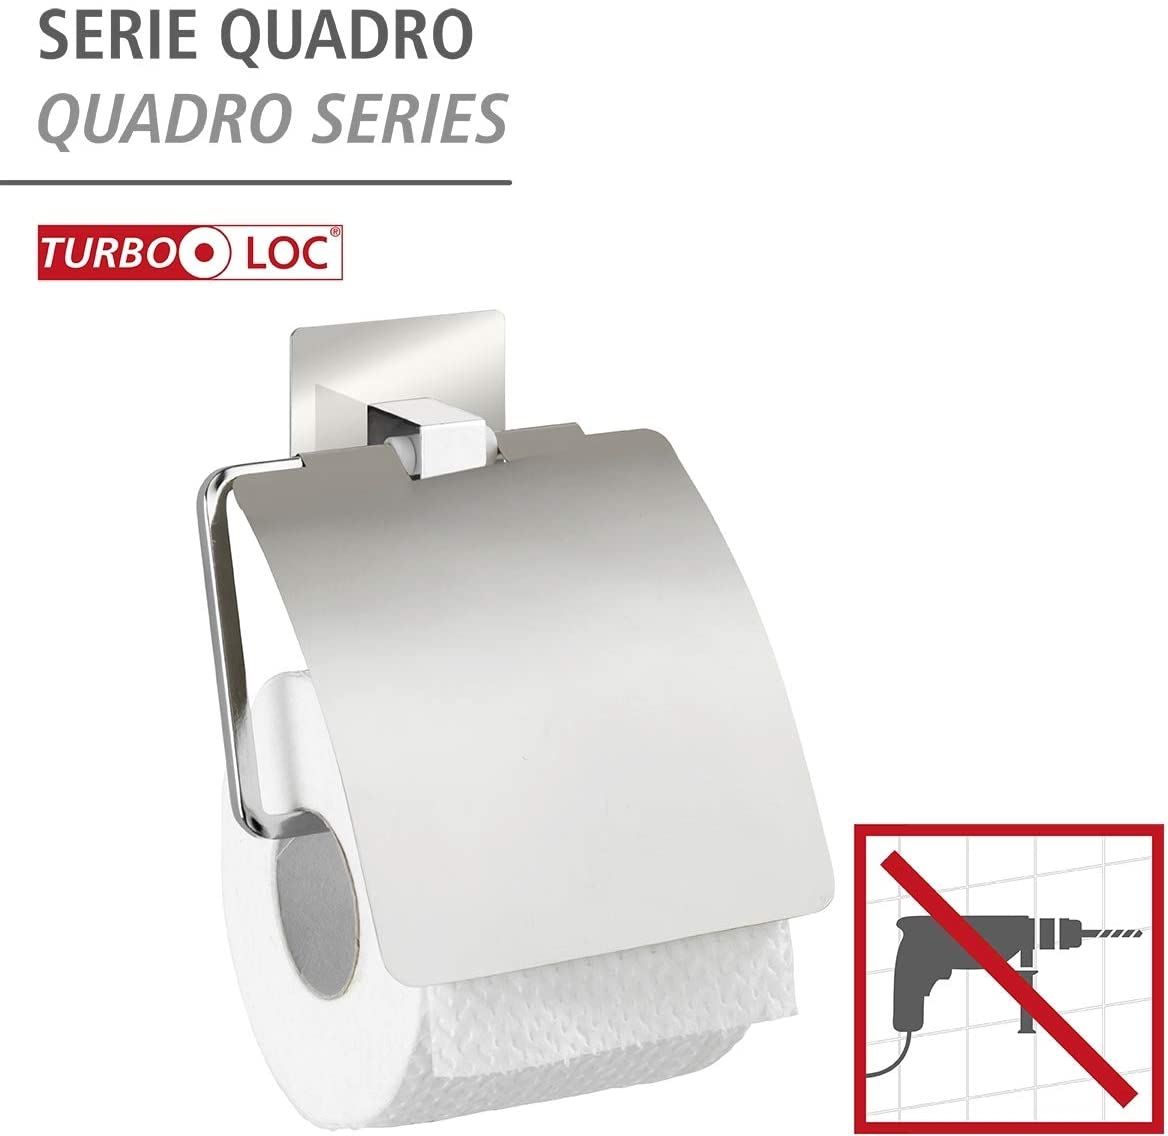 Turbo-Loc® Edelstahl Toilettenpapierhalter mit Deckel Quadro - Befestigen ohne bohren, Edelstahl rostfrei, 13 x 16.5 x 3.5 cm, Chrom